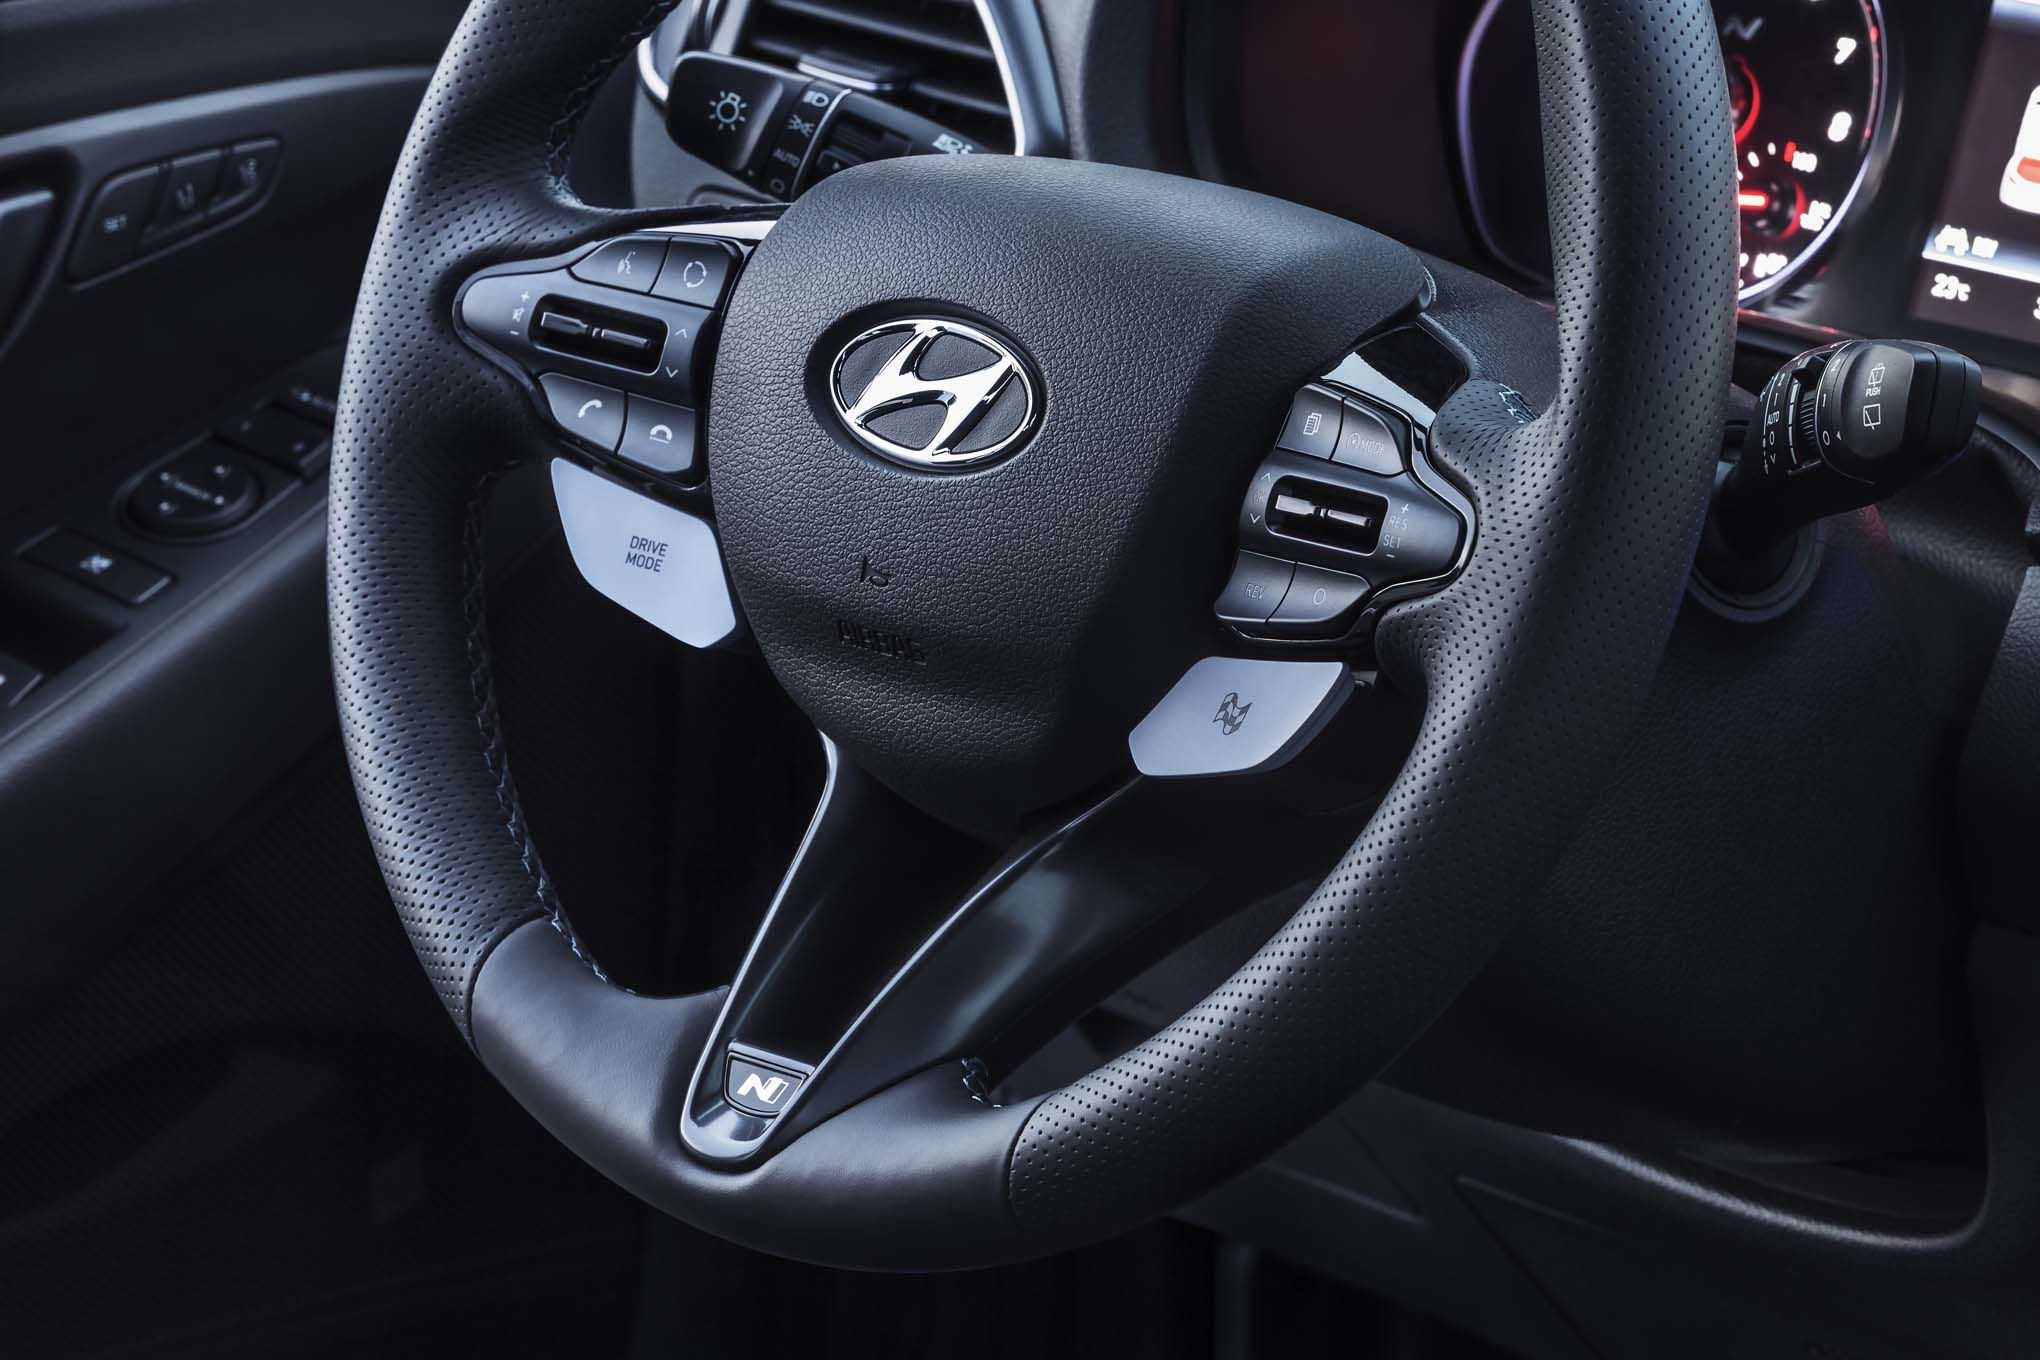 hundai-i30-n-steering-wheel.jpg